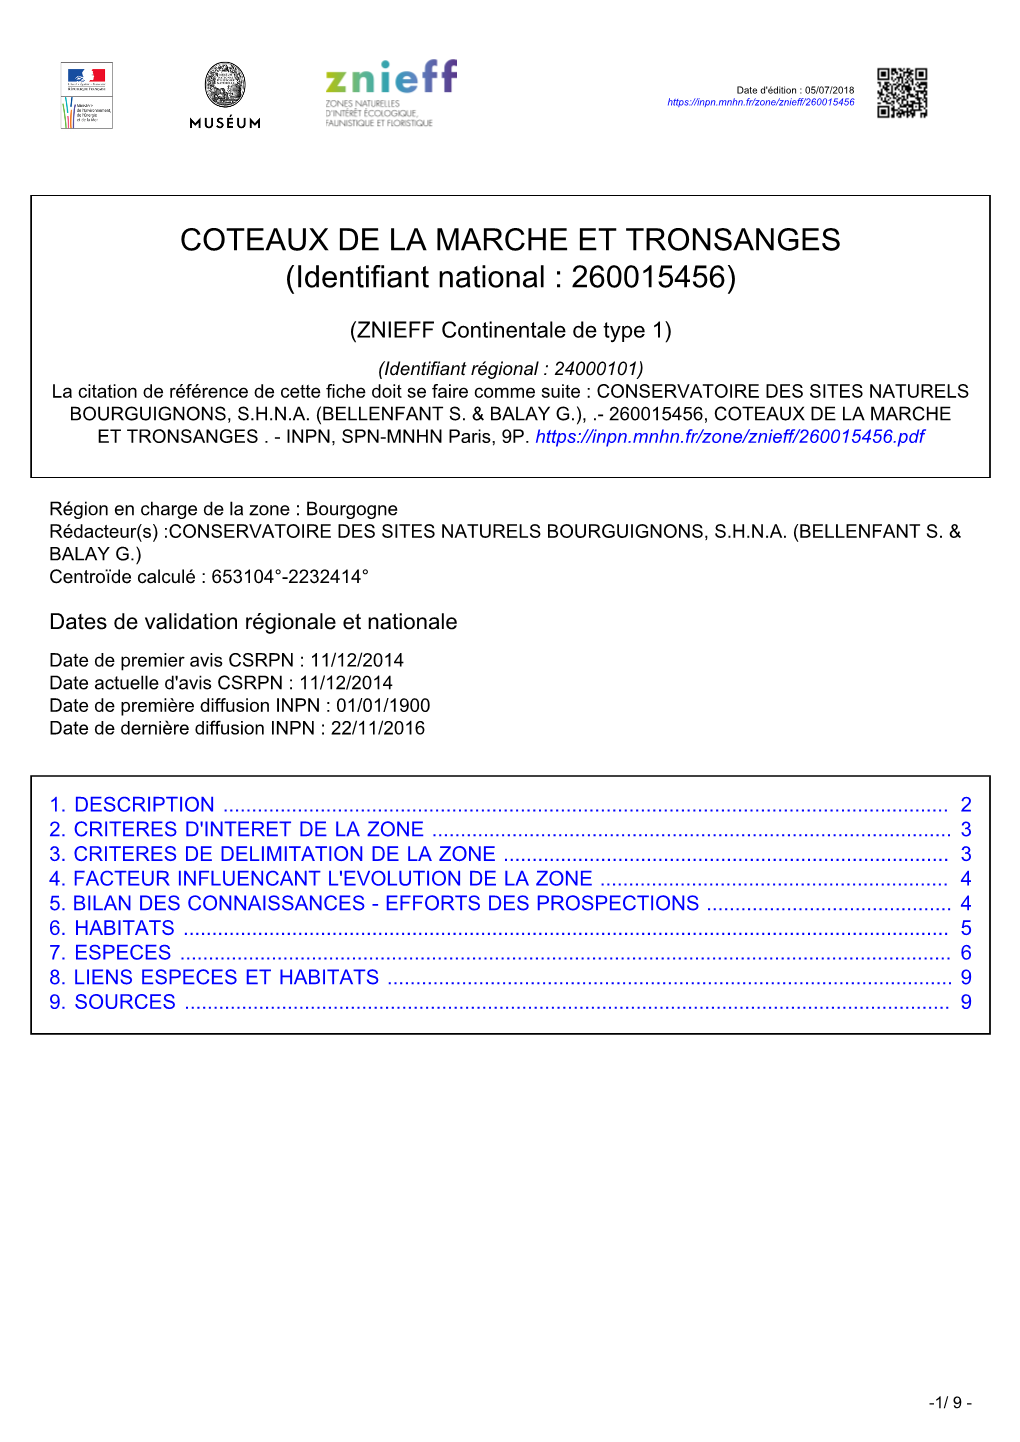 COTEAUX DE LA MARCHE ET TRONSANGES (Identifiant National : 260015456)